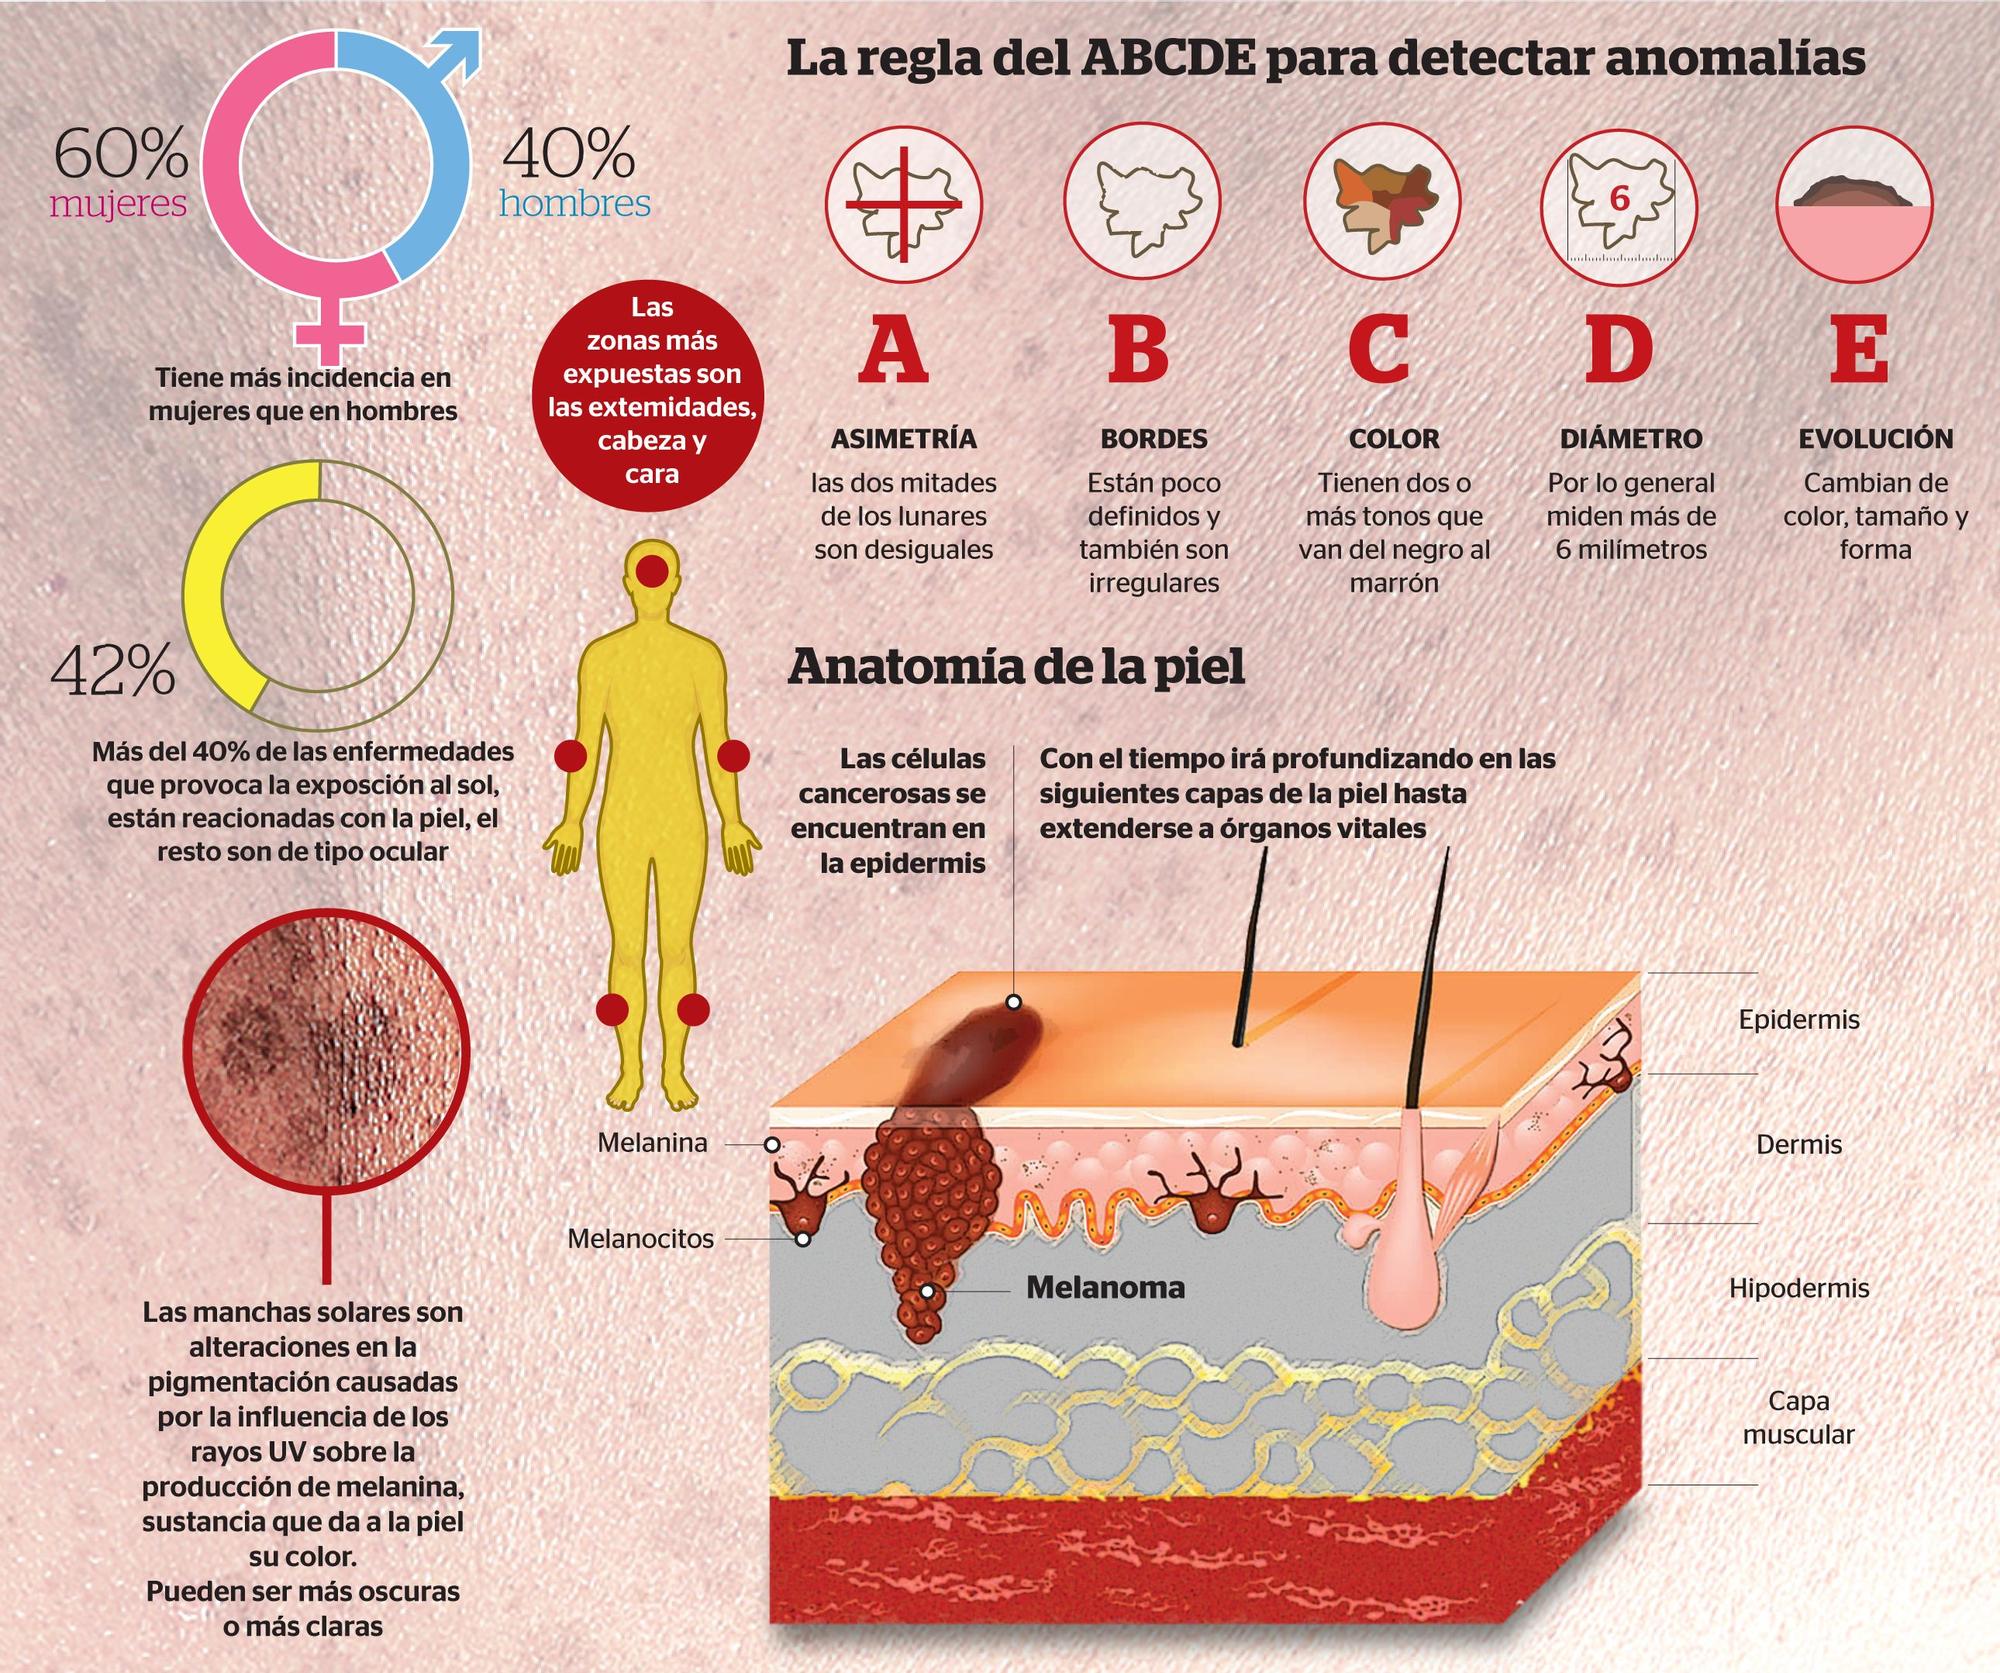 La regla del ABCDE para detectar anomalías